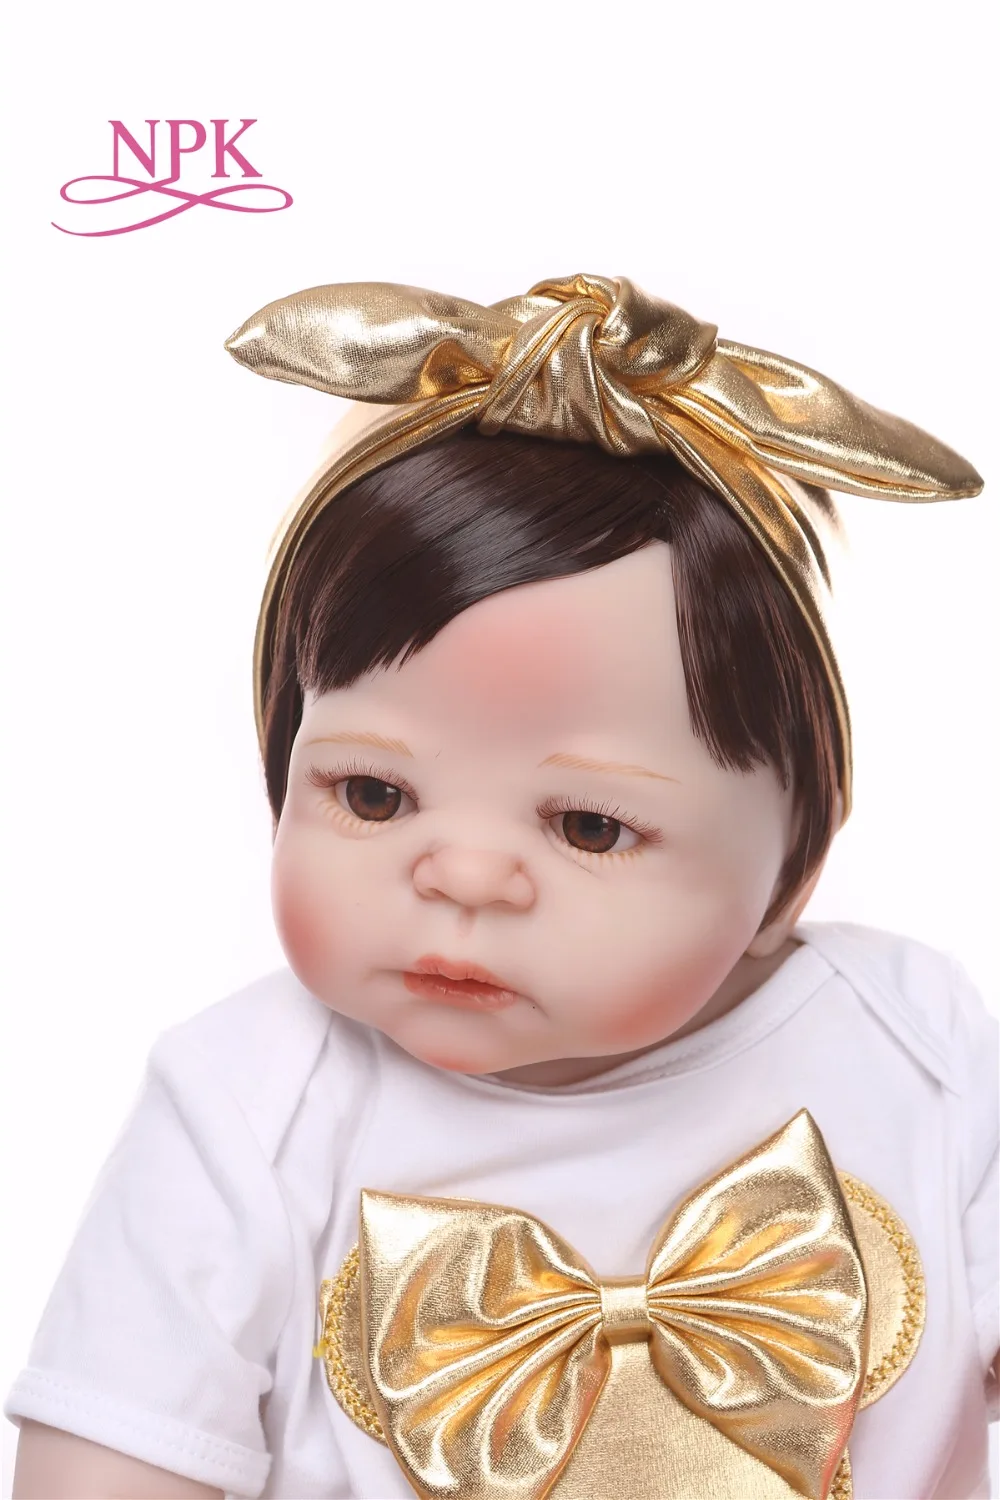 NPK Новое поступление 55 см силиконовая кукла реборн всего тела настоящая жизнь Золотая Детская кукла «Принцесса» подарок для ребенка Рождество gif